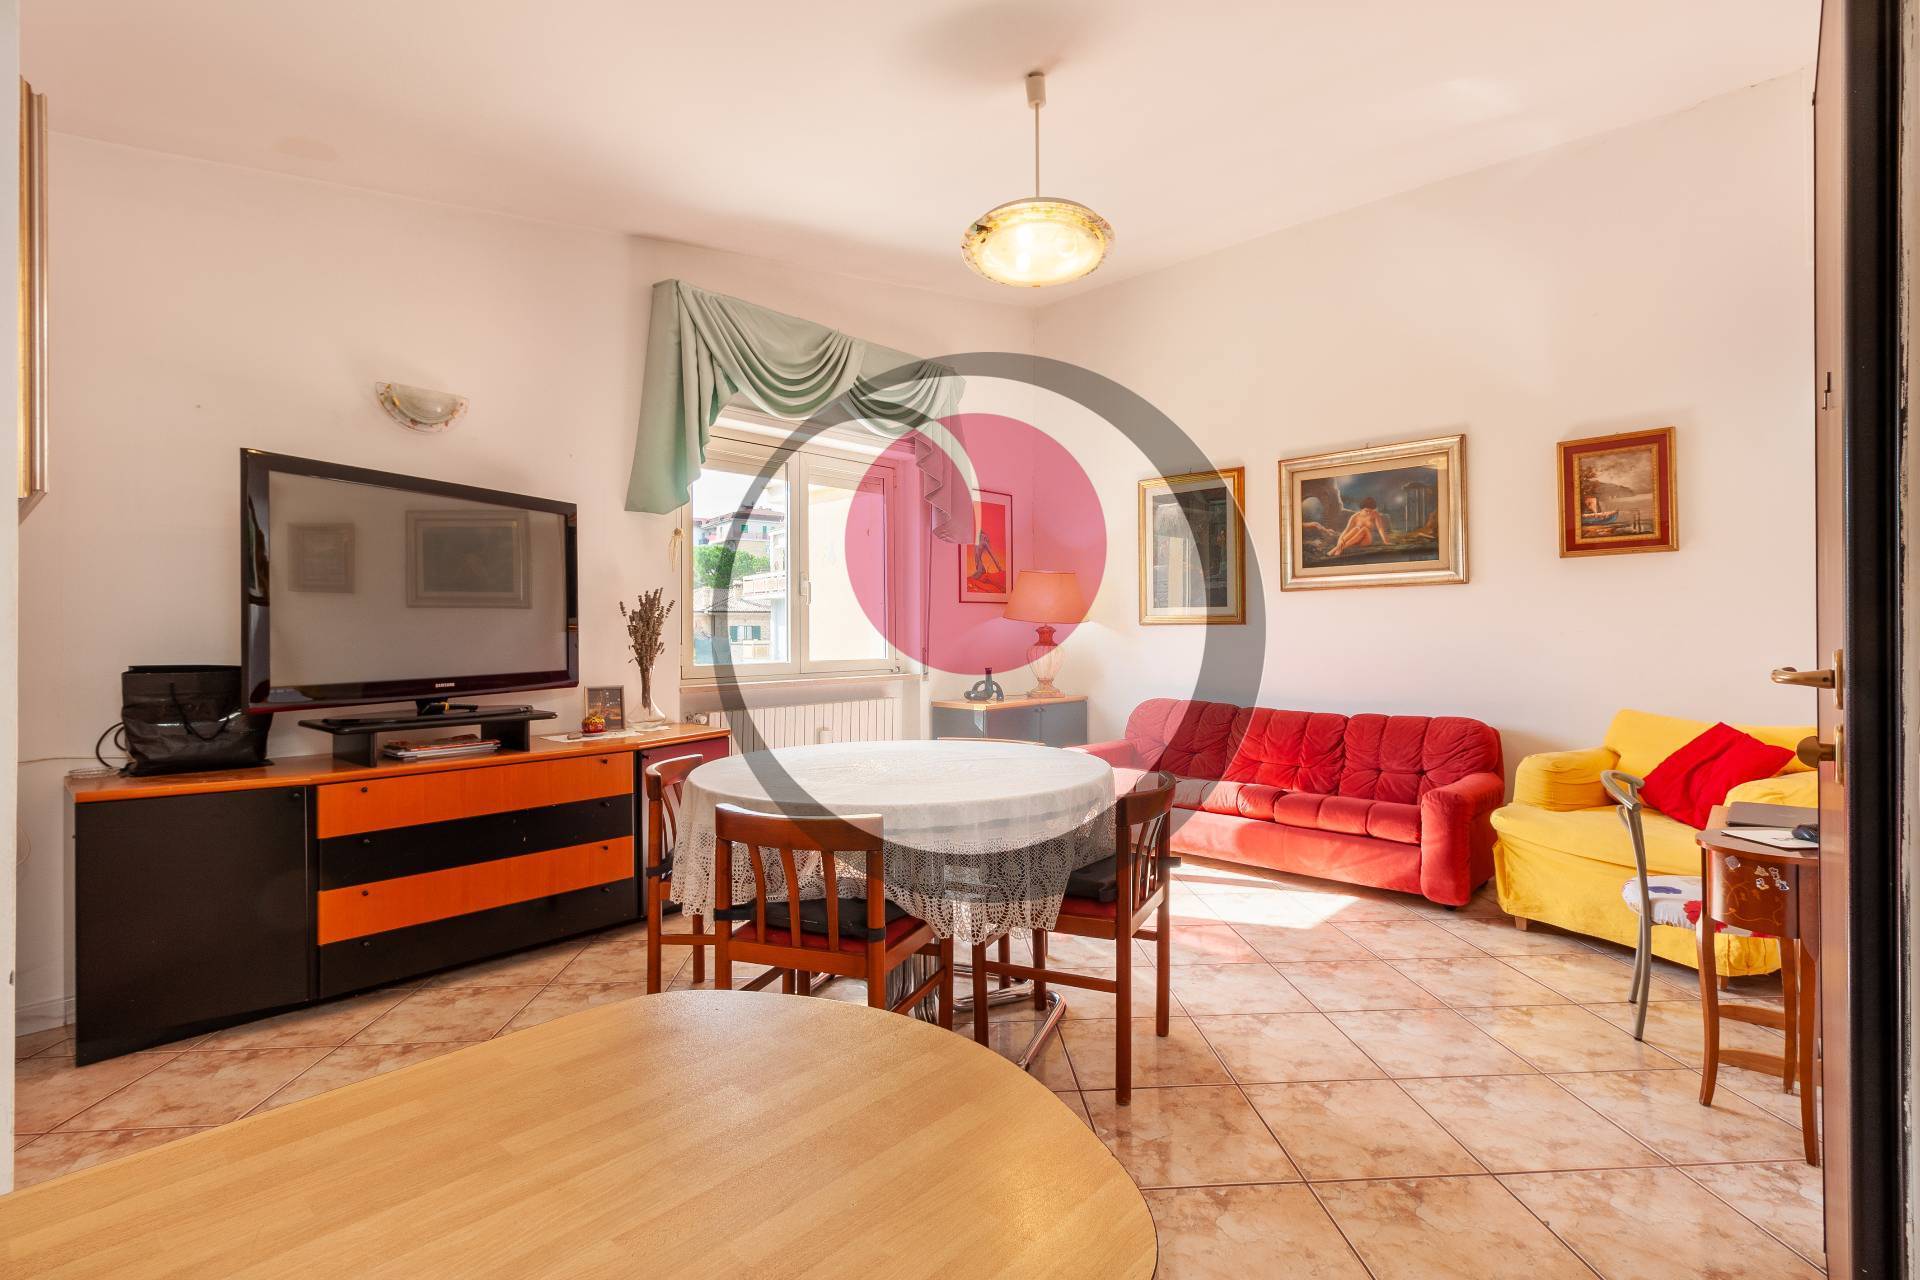 Appartamento in vendita a Lanciano, 3 locali, prezzo € 70.000 | PortaleAgenzieImmobiliari.it